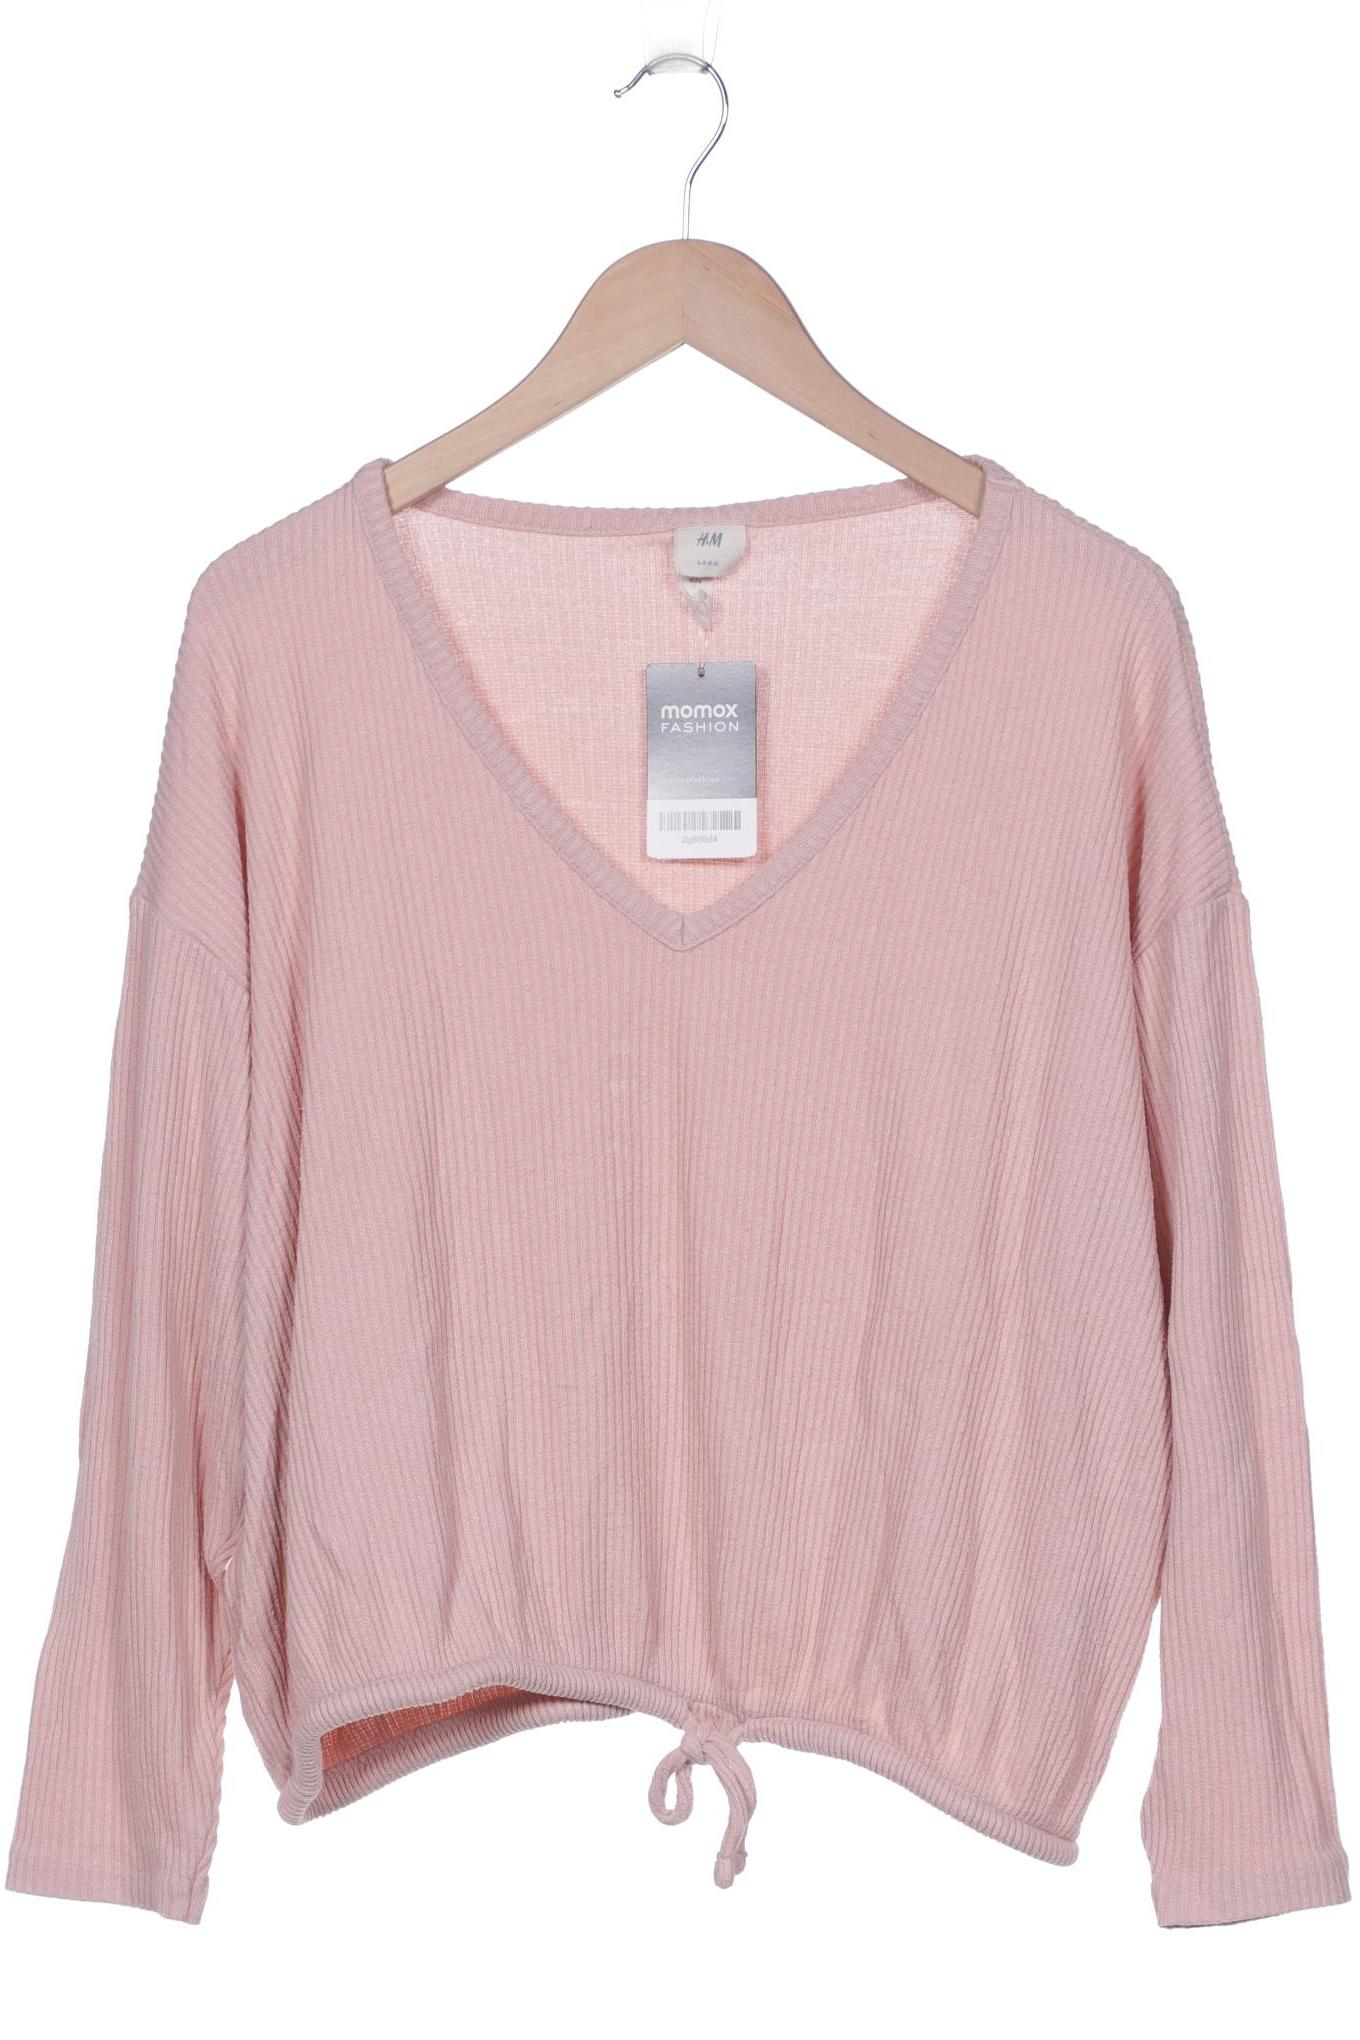 H&M Damen Pullover, pink, Gr. 42 von H&M